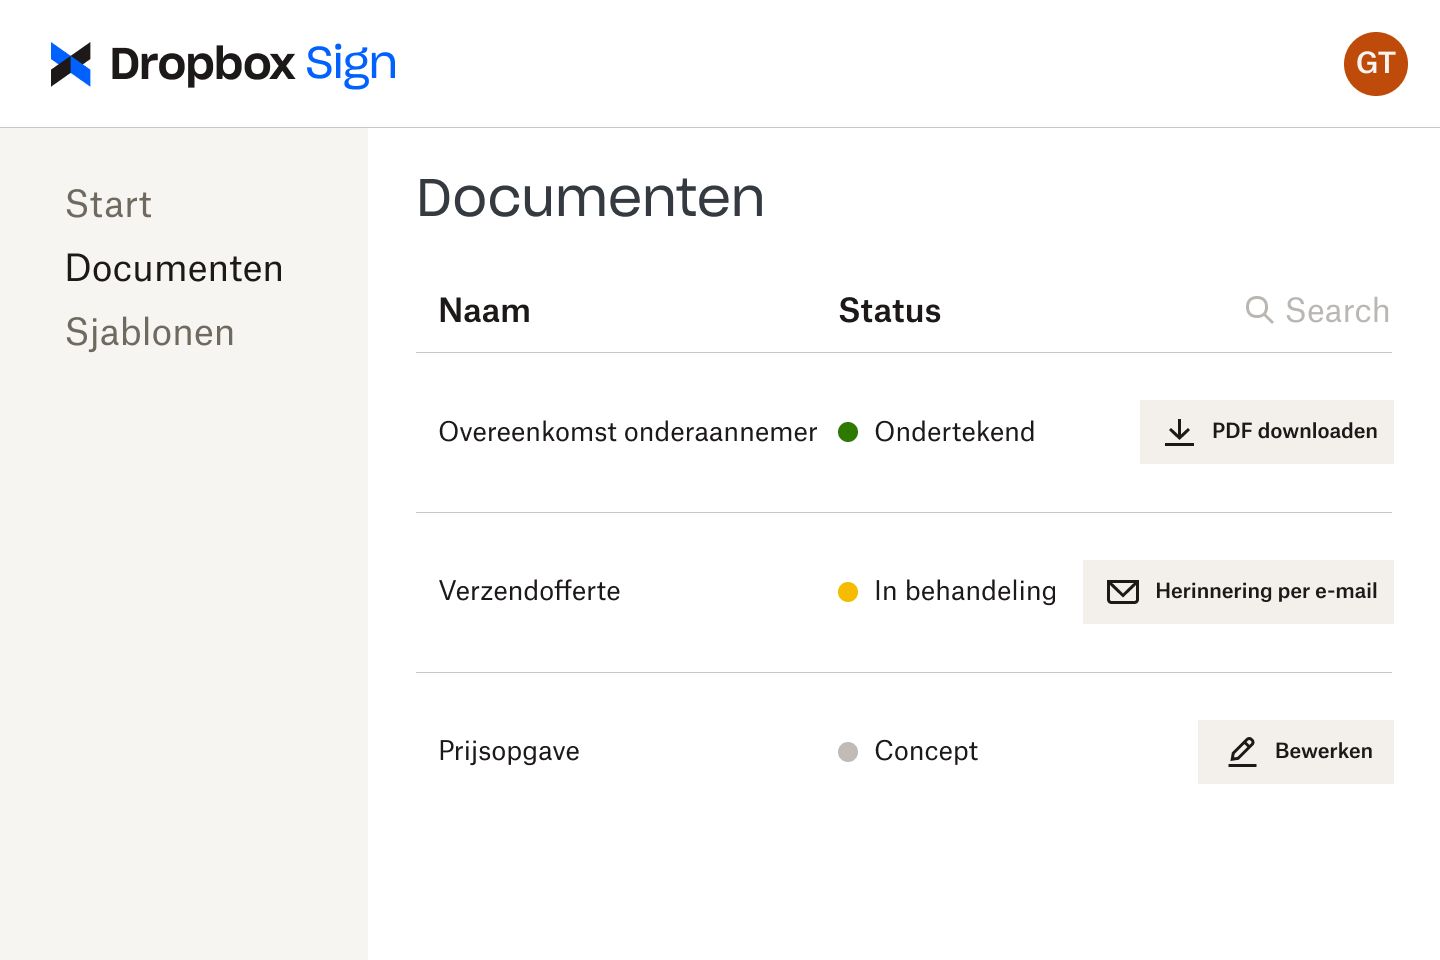 Documenten in de Dropbox Sign-interface tijdens verschillende fases van de beoordeling